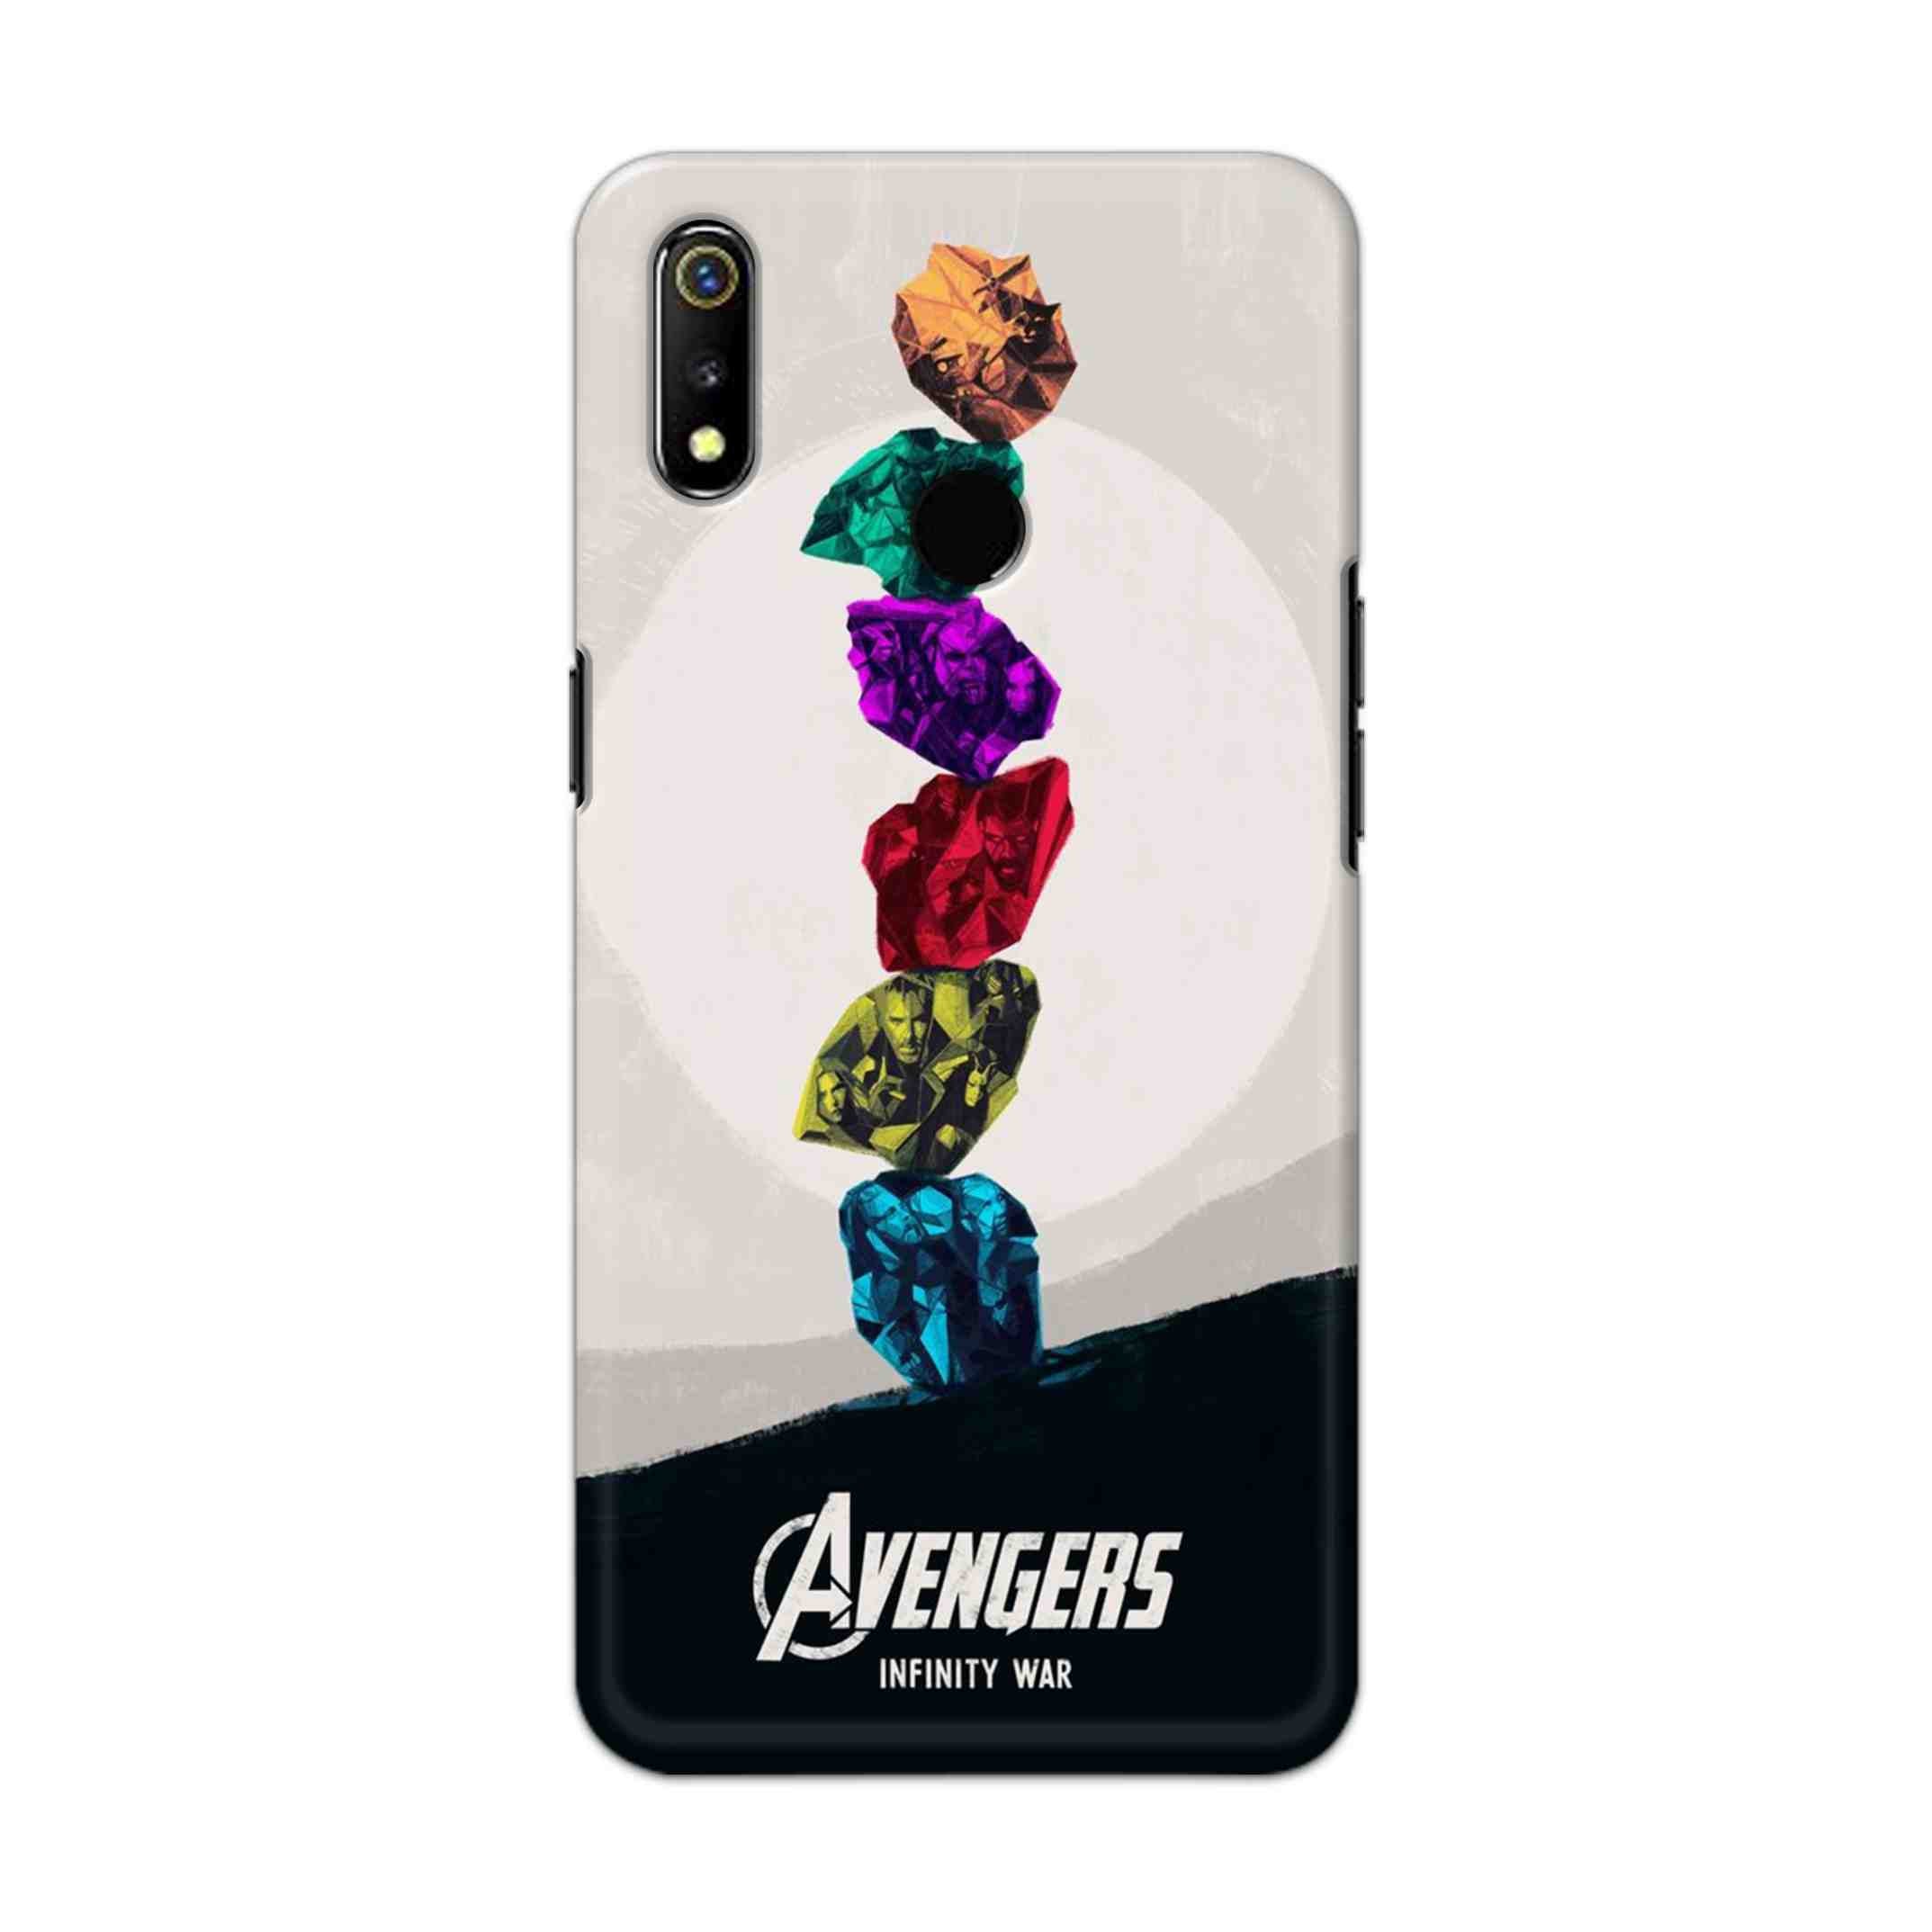 Buy Avengers Stone Hard Back Mobile Phone Case Cover For Oppo Realme 3 Online